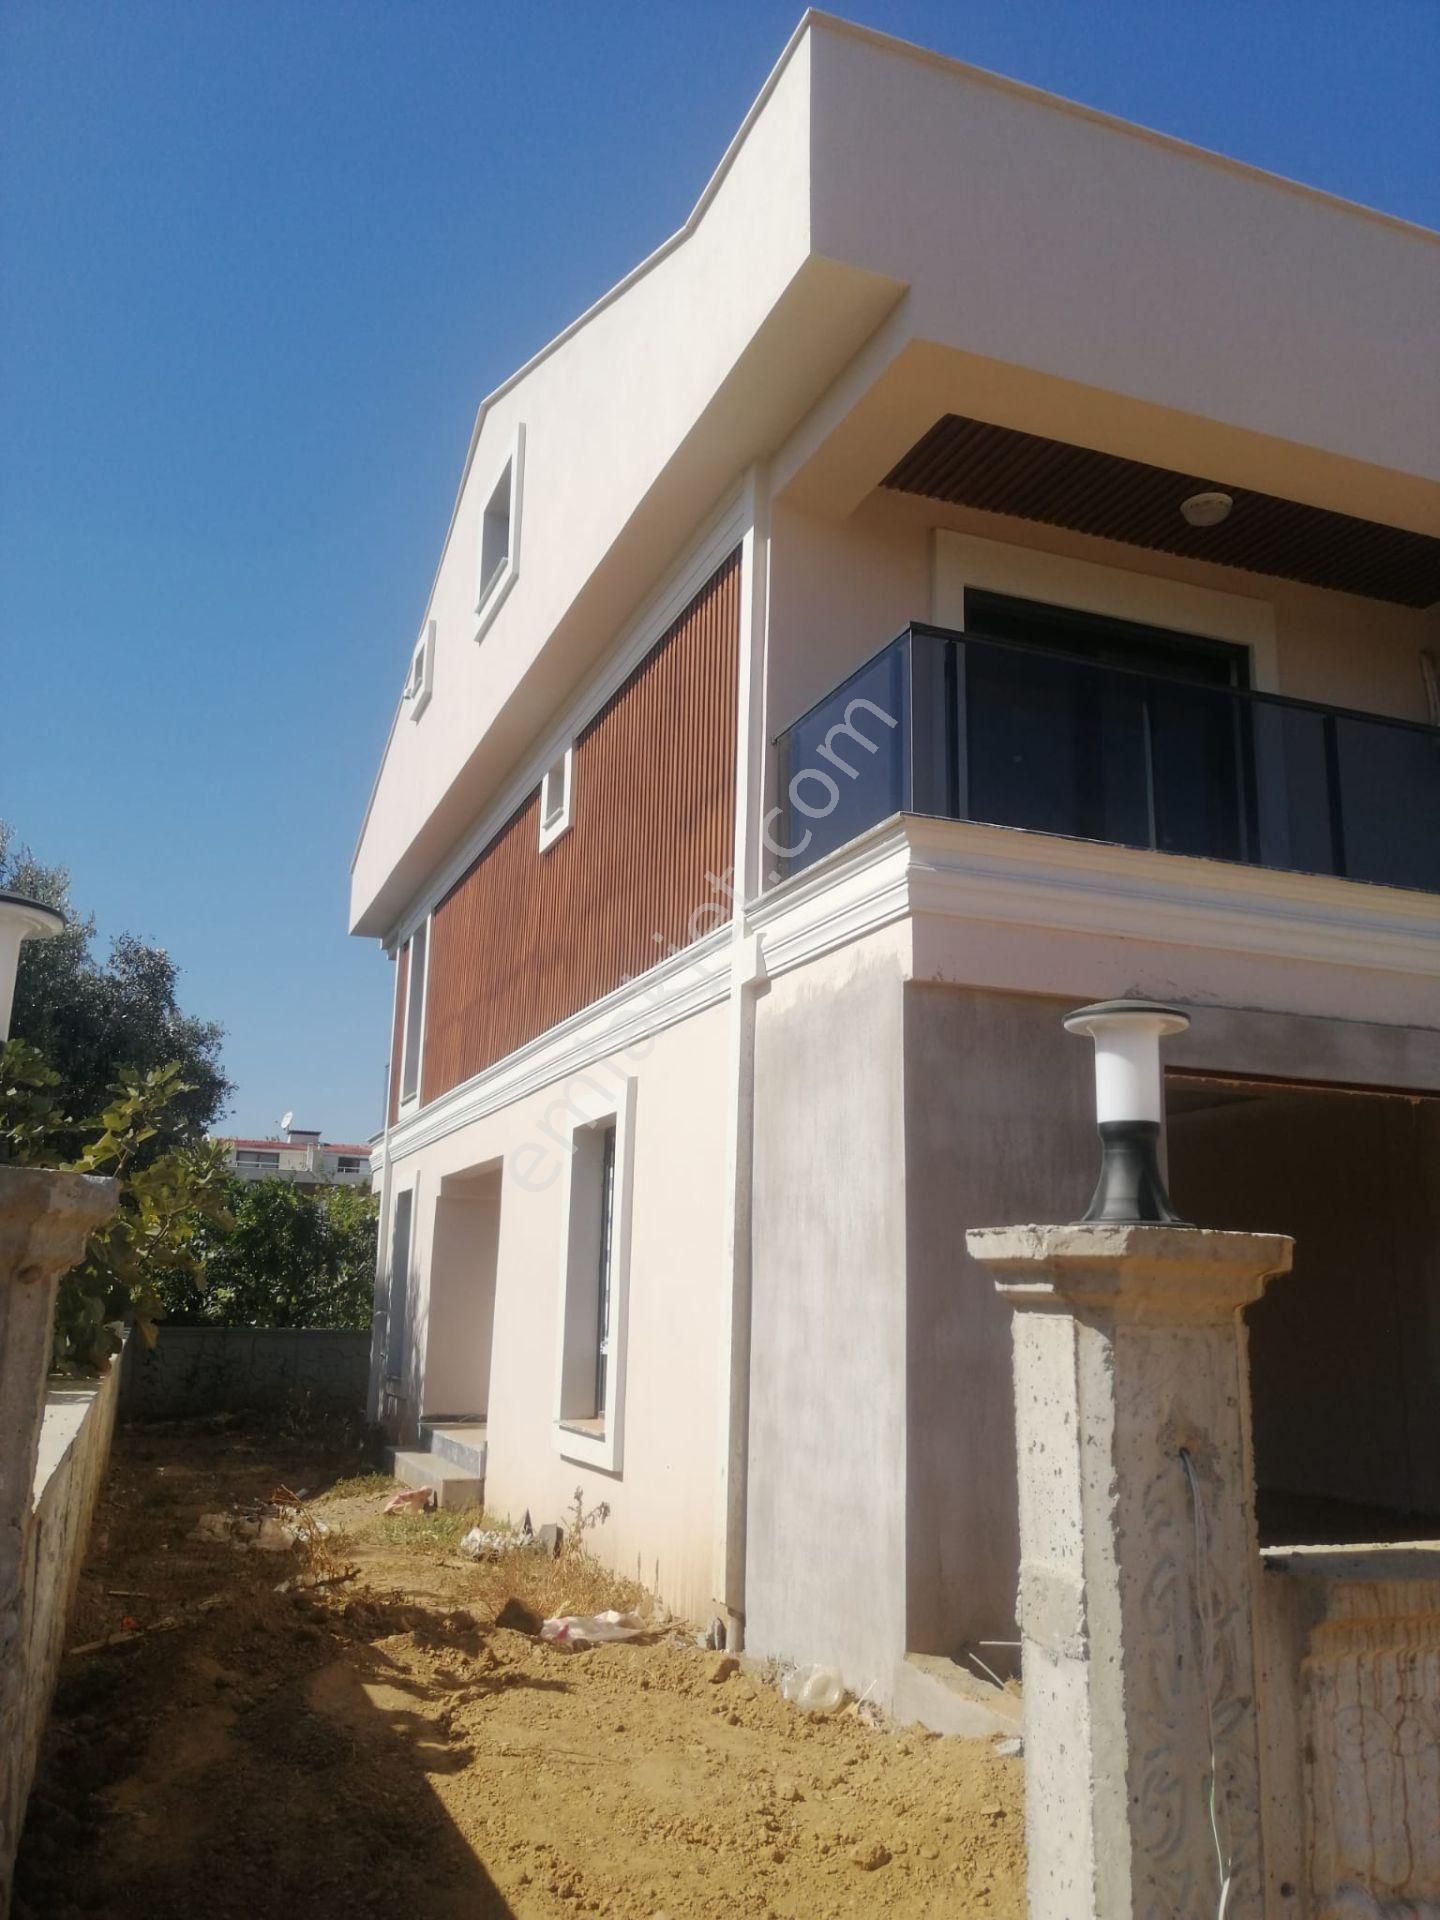 Menderes Mithatpaşa Satılık Villa  Menderes Turyap'tan Mithatpaşa Mh.4+1Satılık Sıfır Triplex Villa